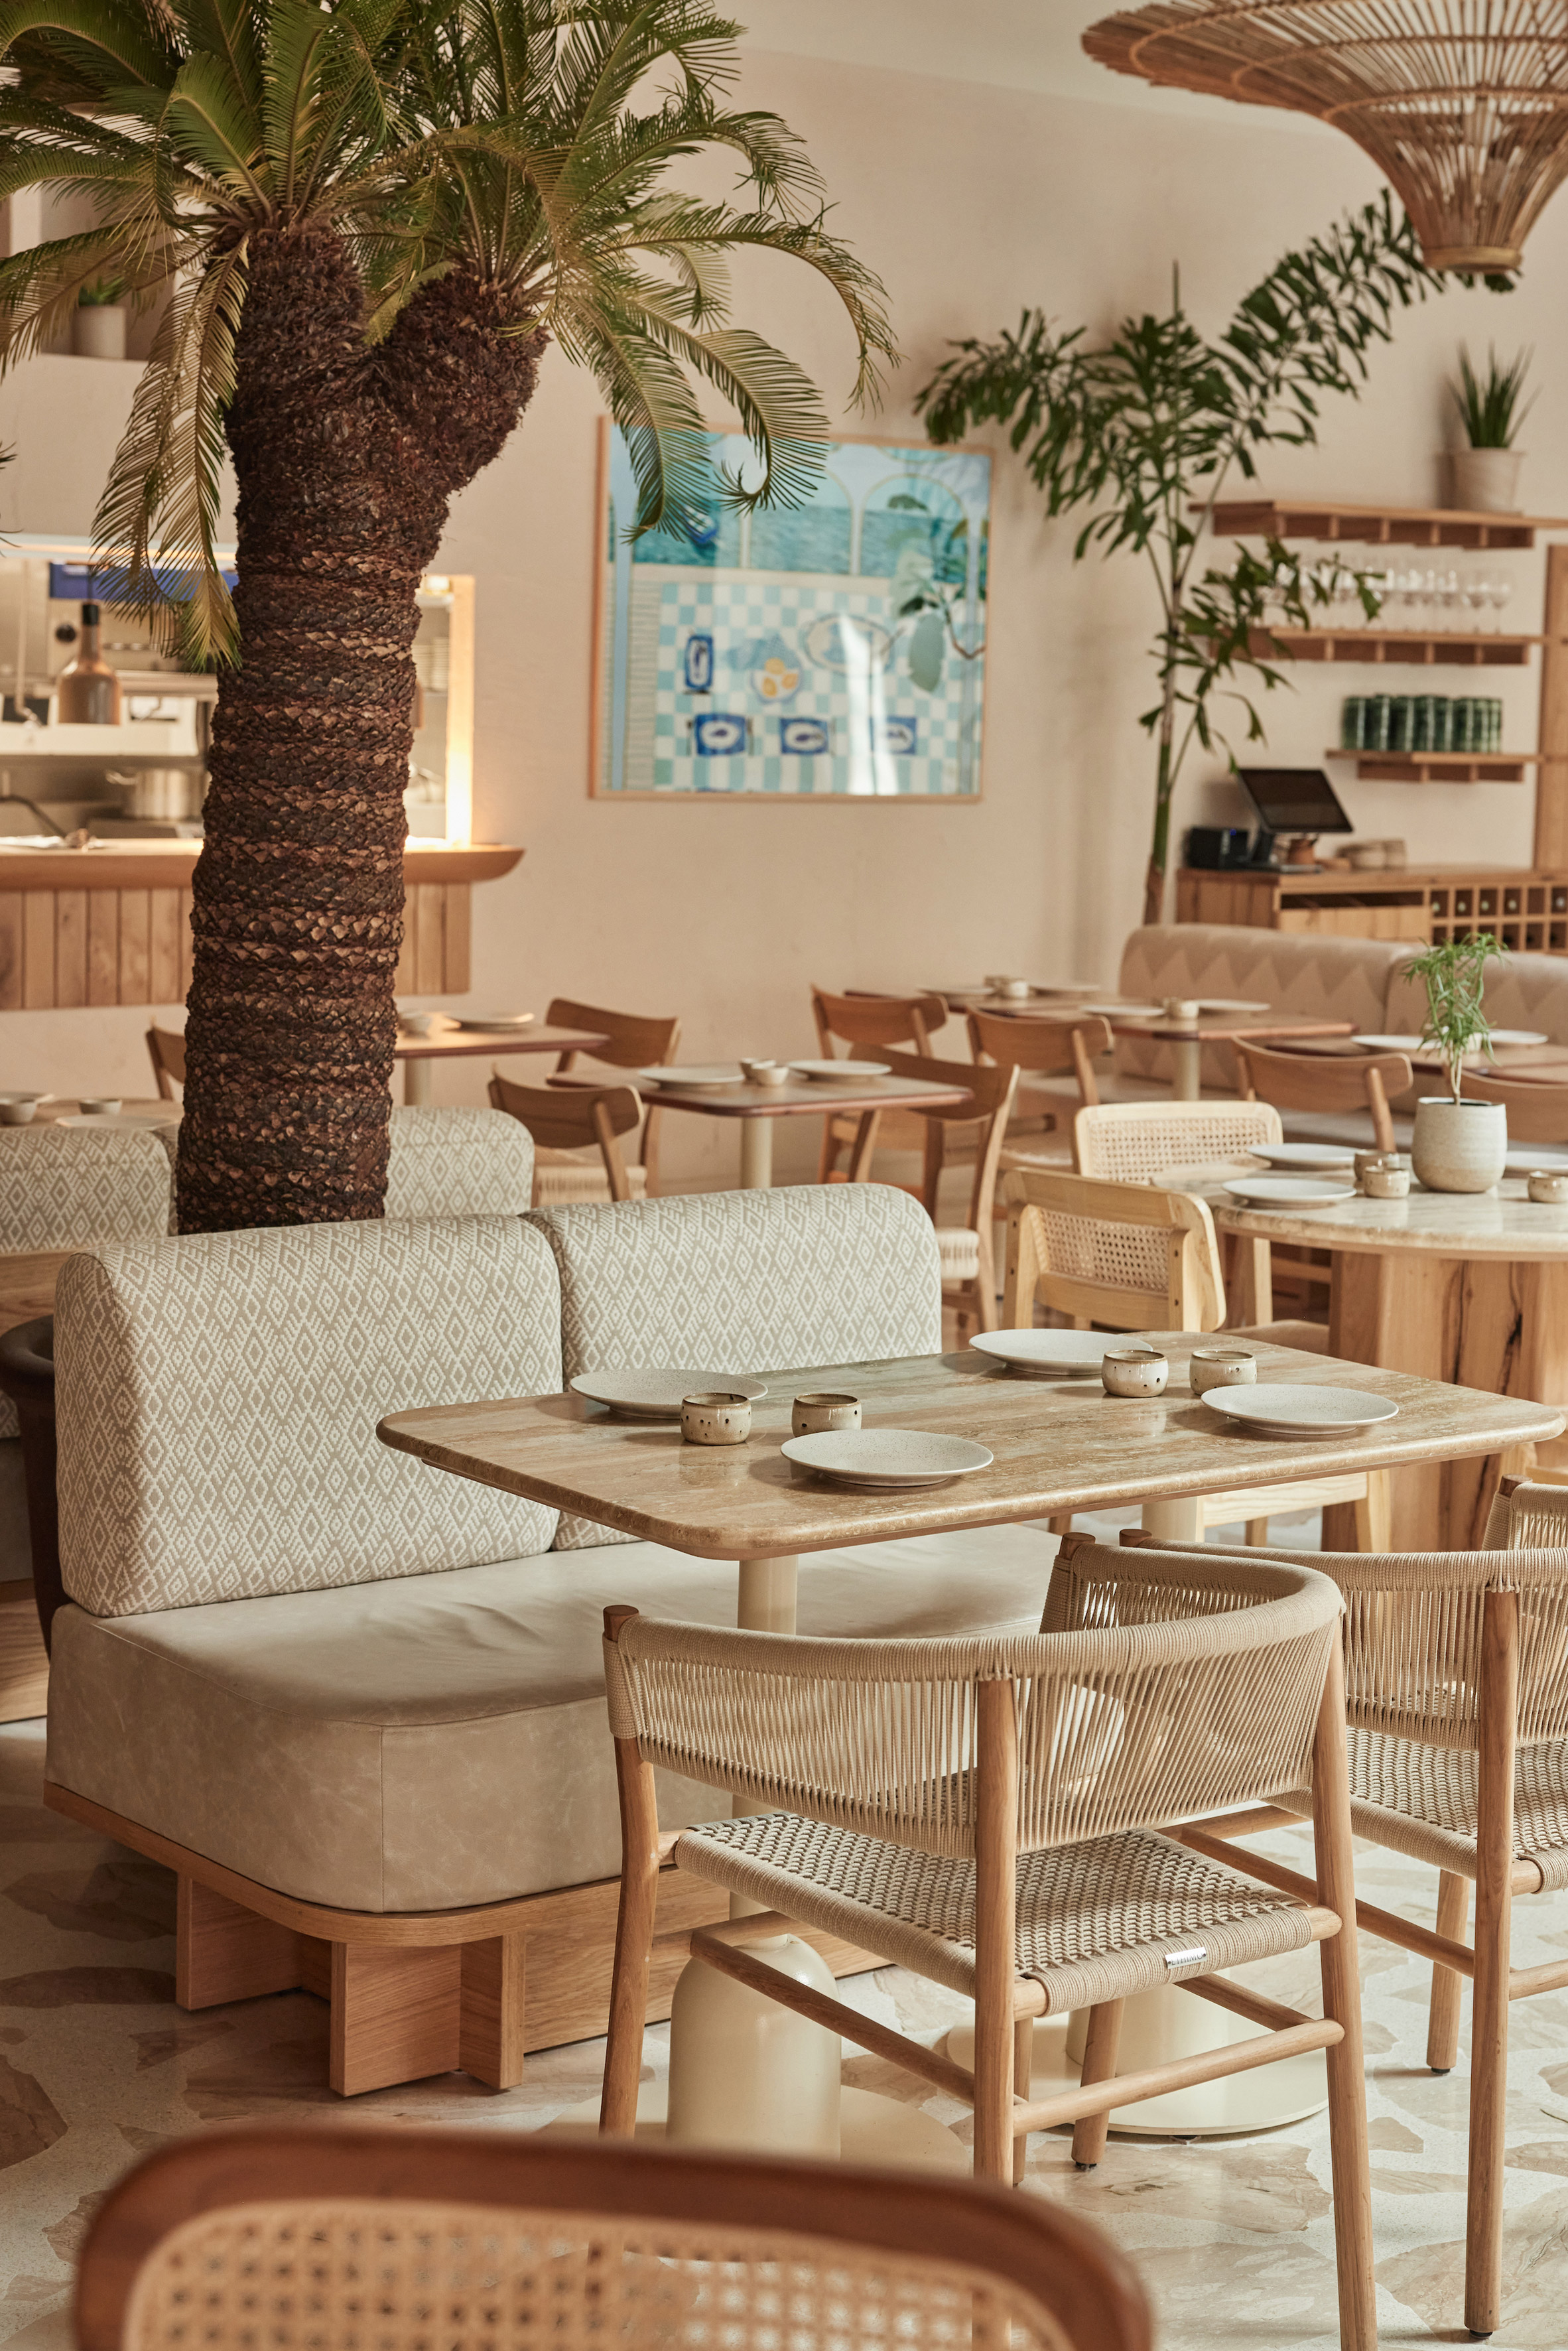 A-nrd为伦敦苏豪区的餐厅带来“海滨感觉”|ART-Arrakis | 建筑室内设计的创新与灵感